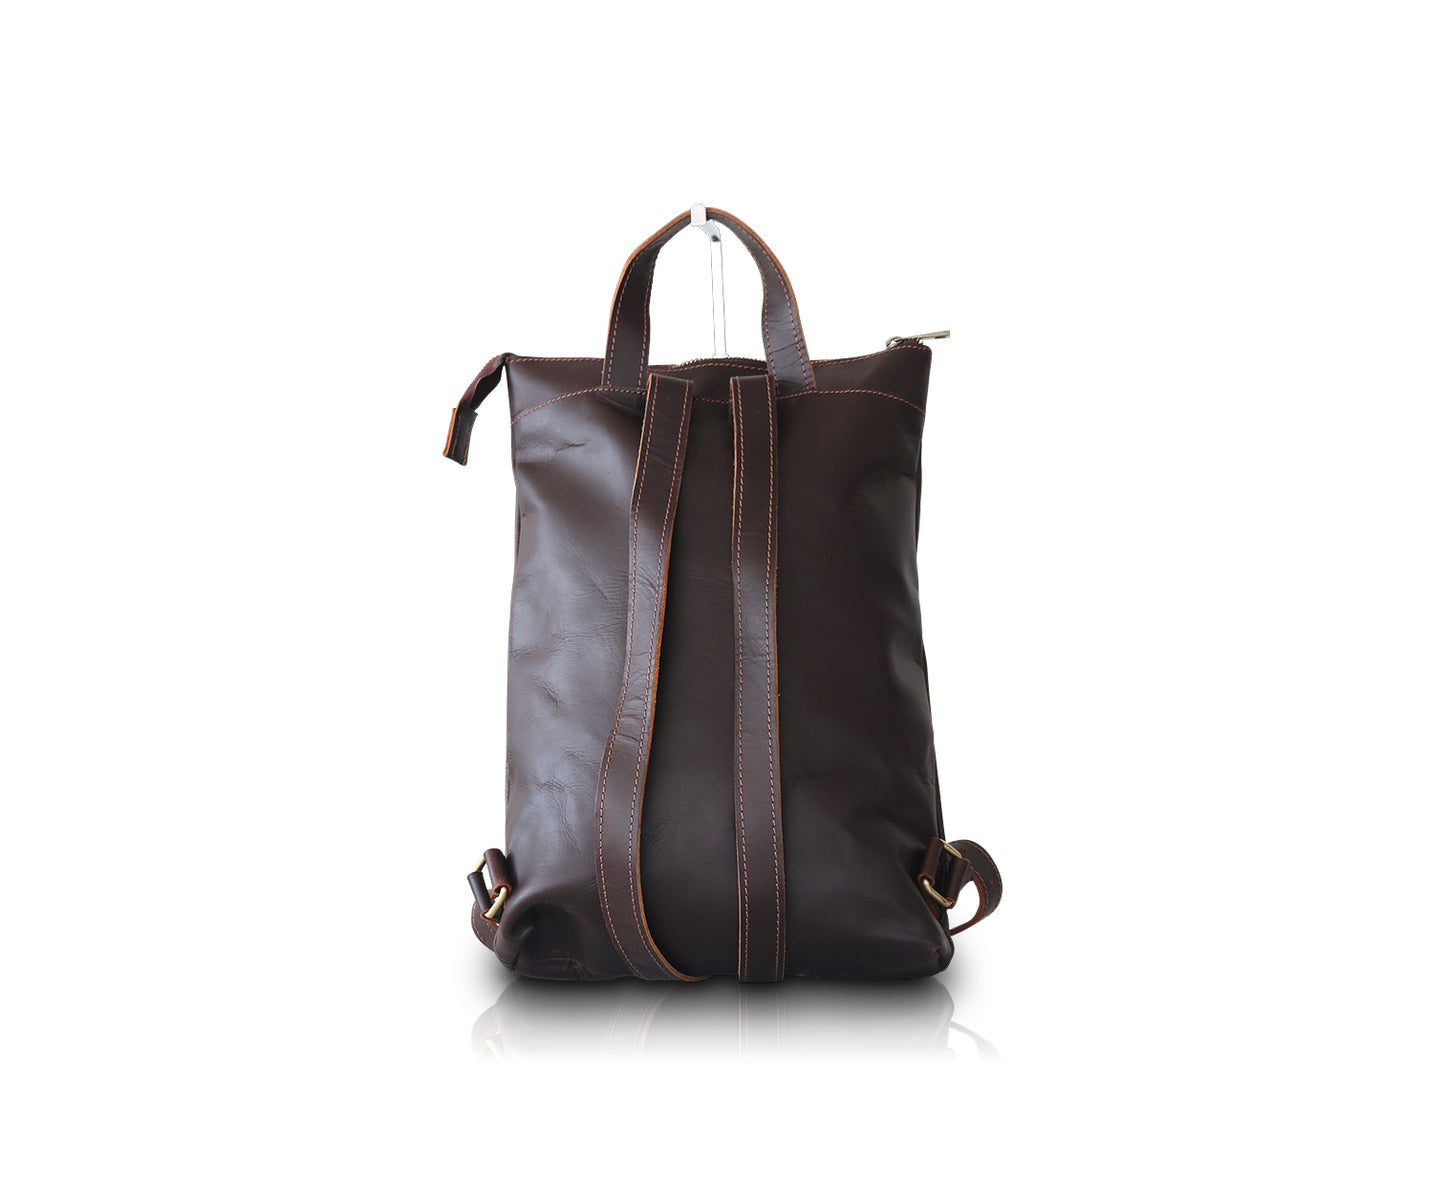 Small Leather Bag, Crossbody Bag CellPhone Wallet Purse Lightweight  Crossbody,Red，G99525 - Walmart.com